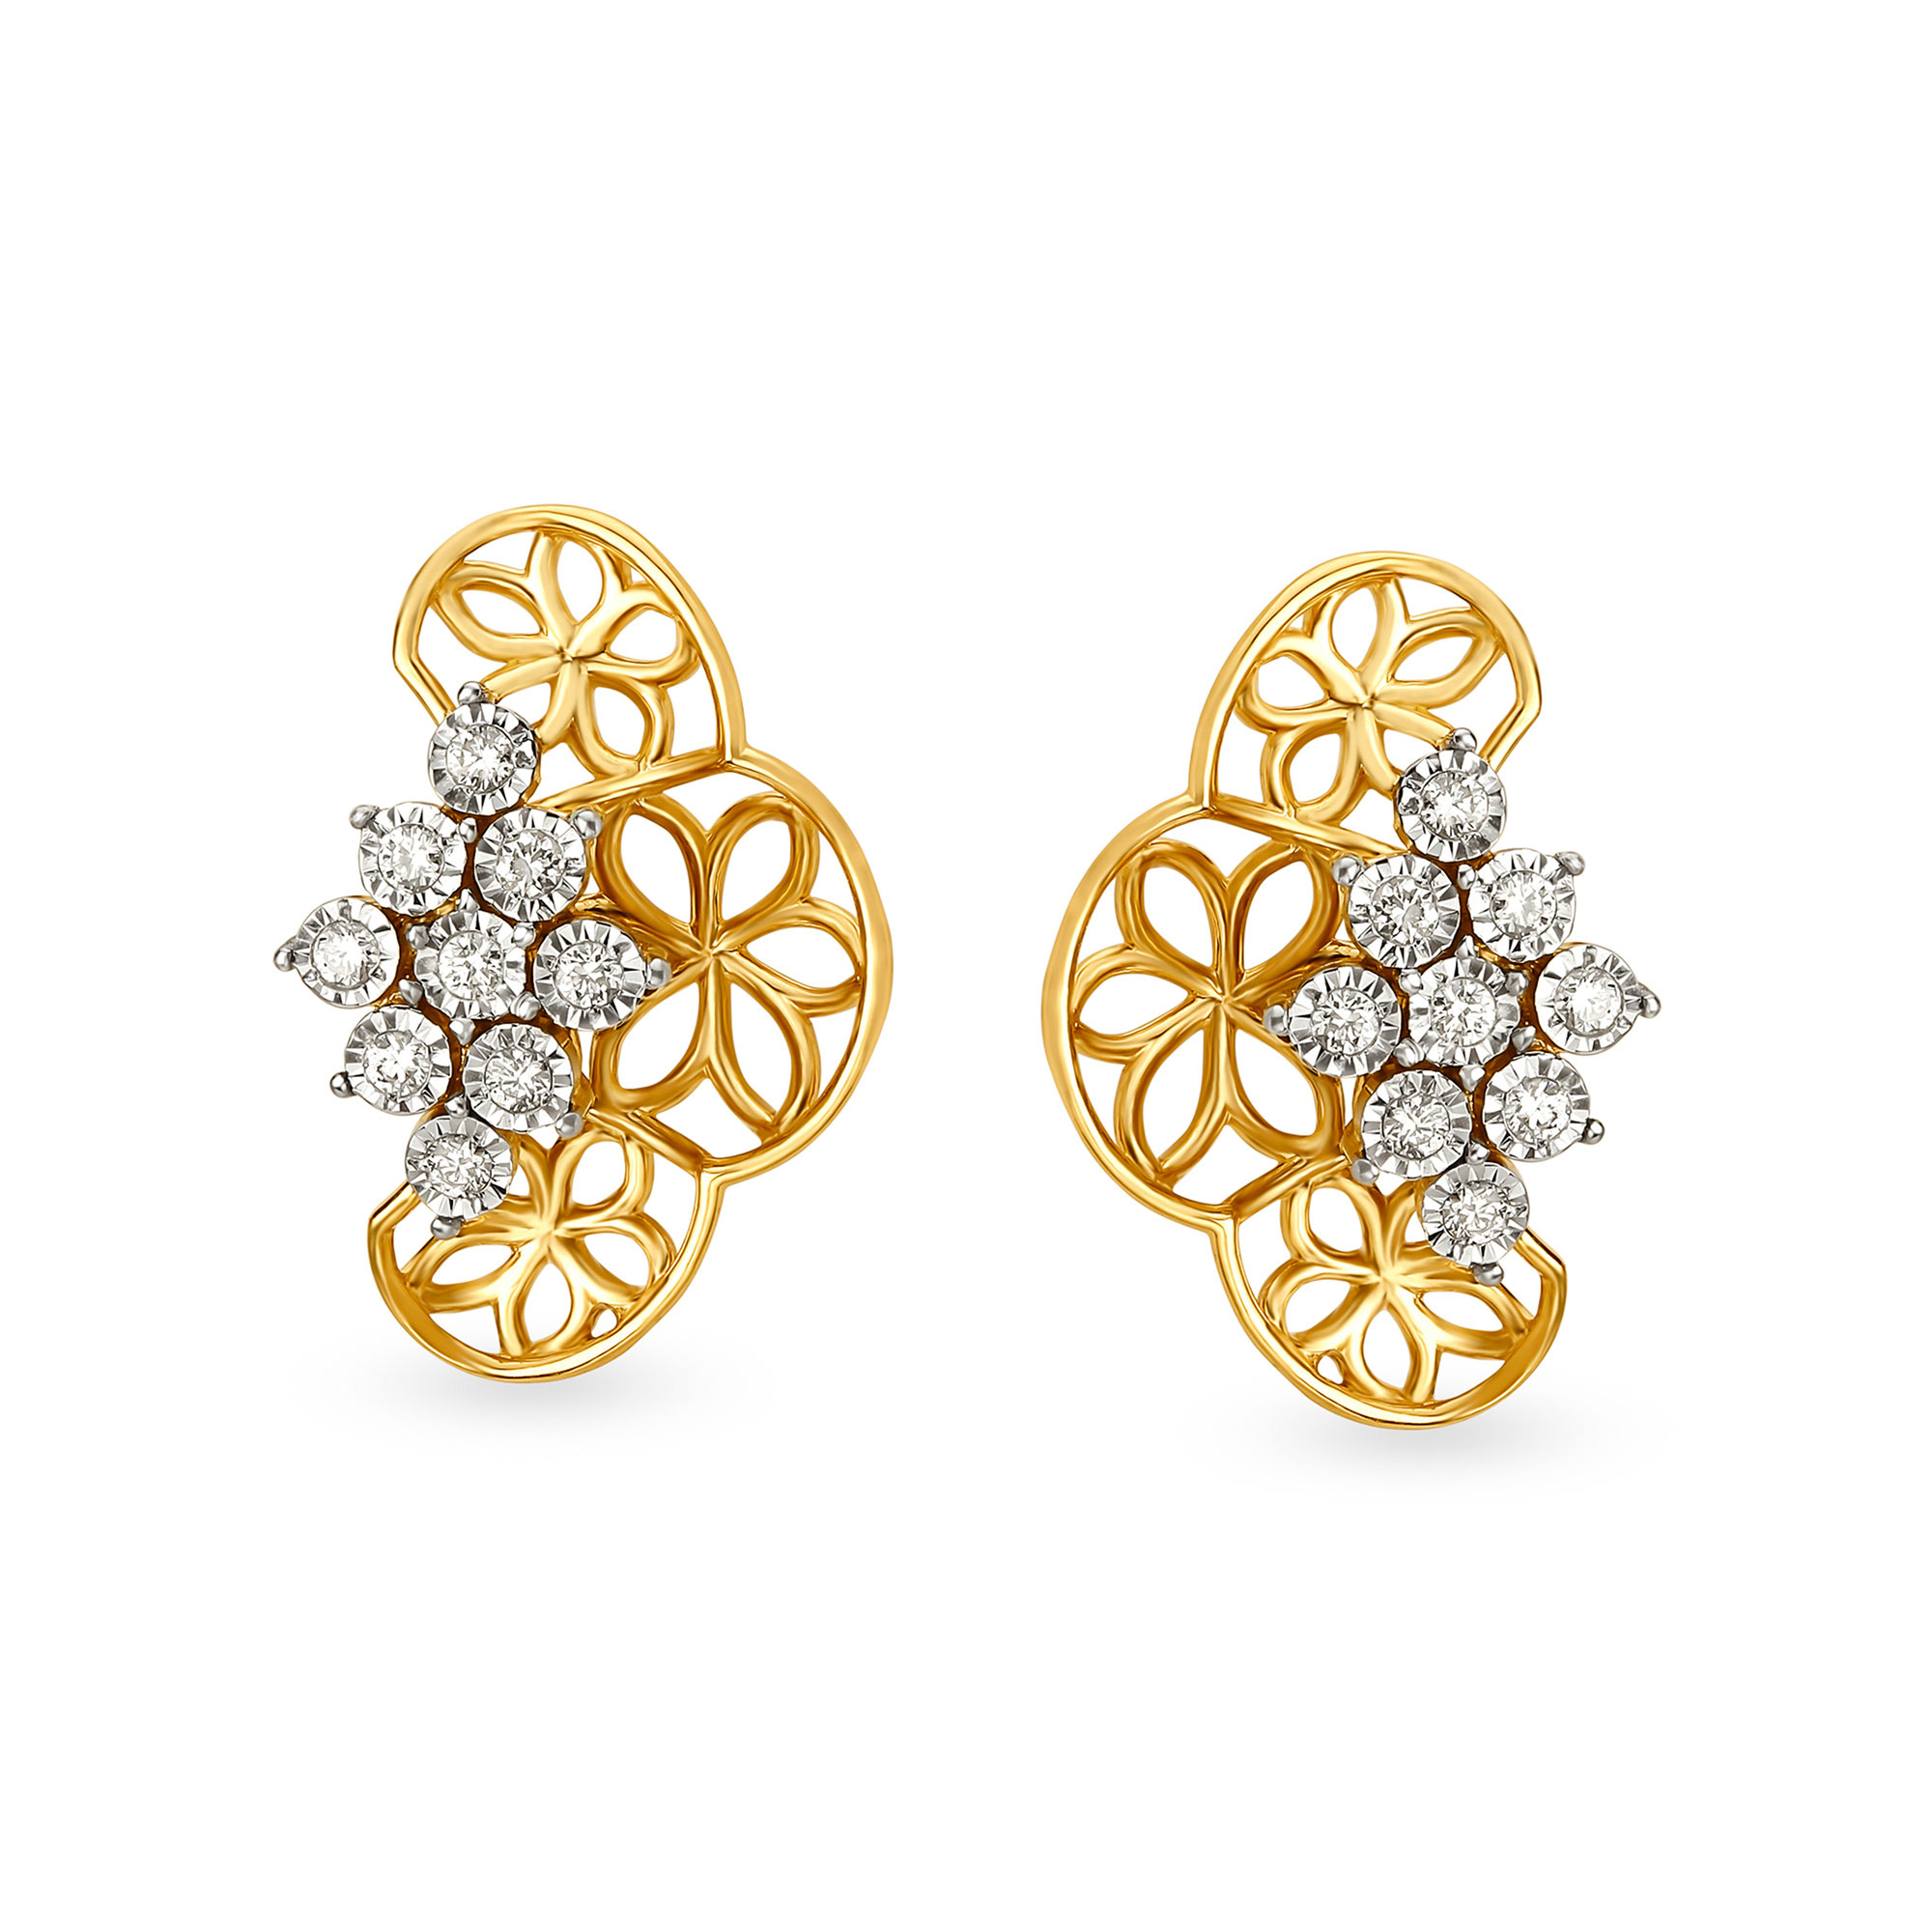 Stylish Floral Diamond Stud Earrings